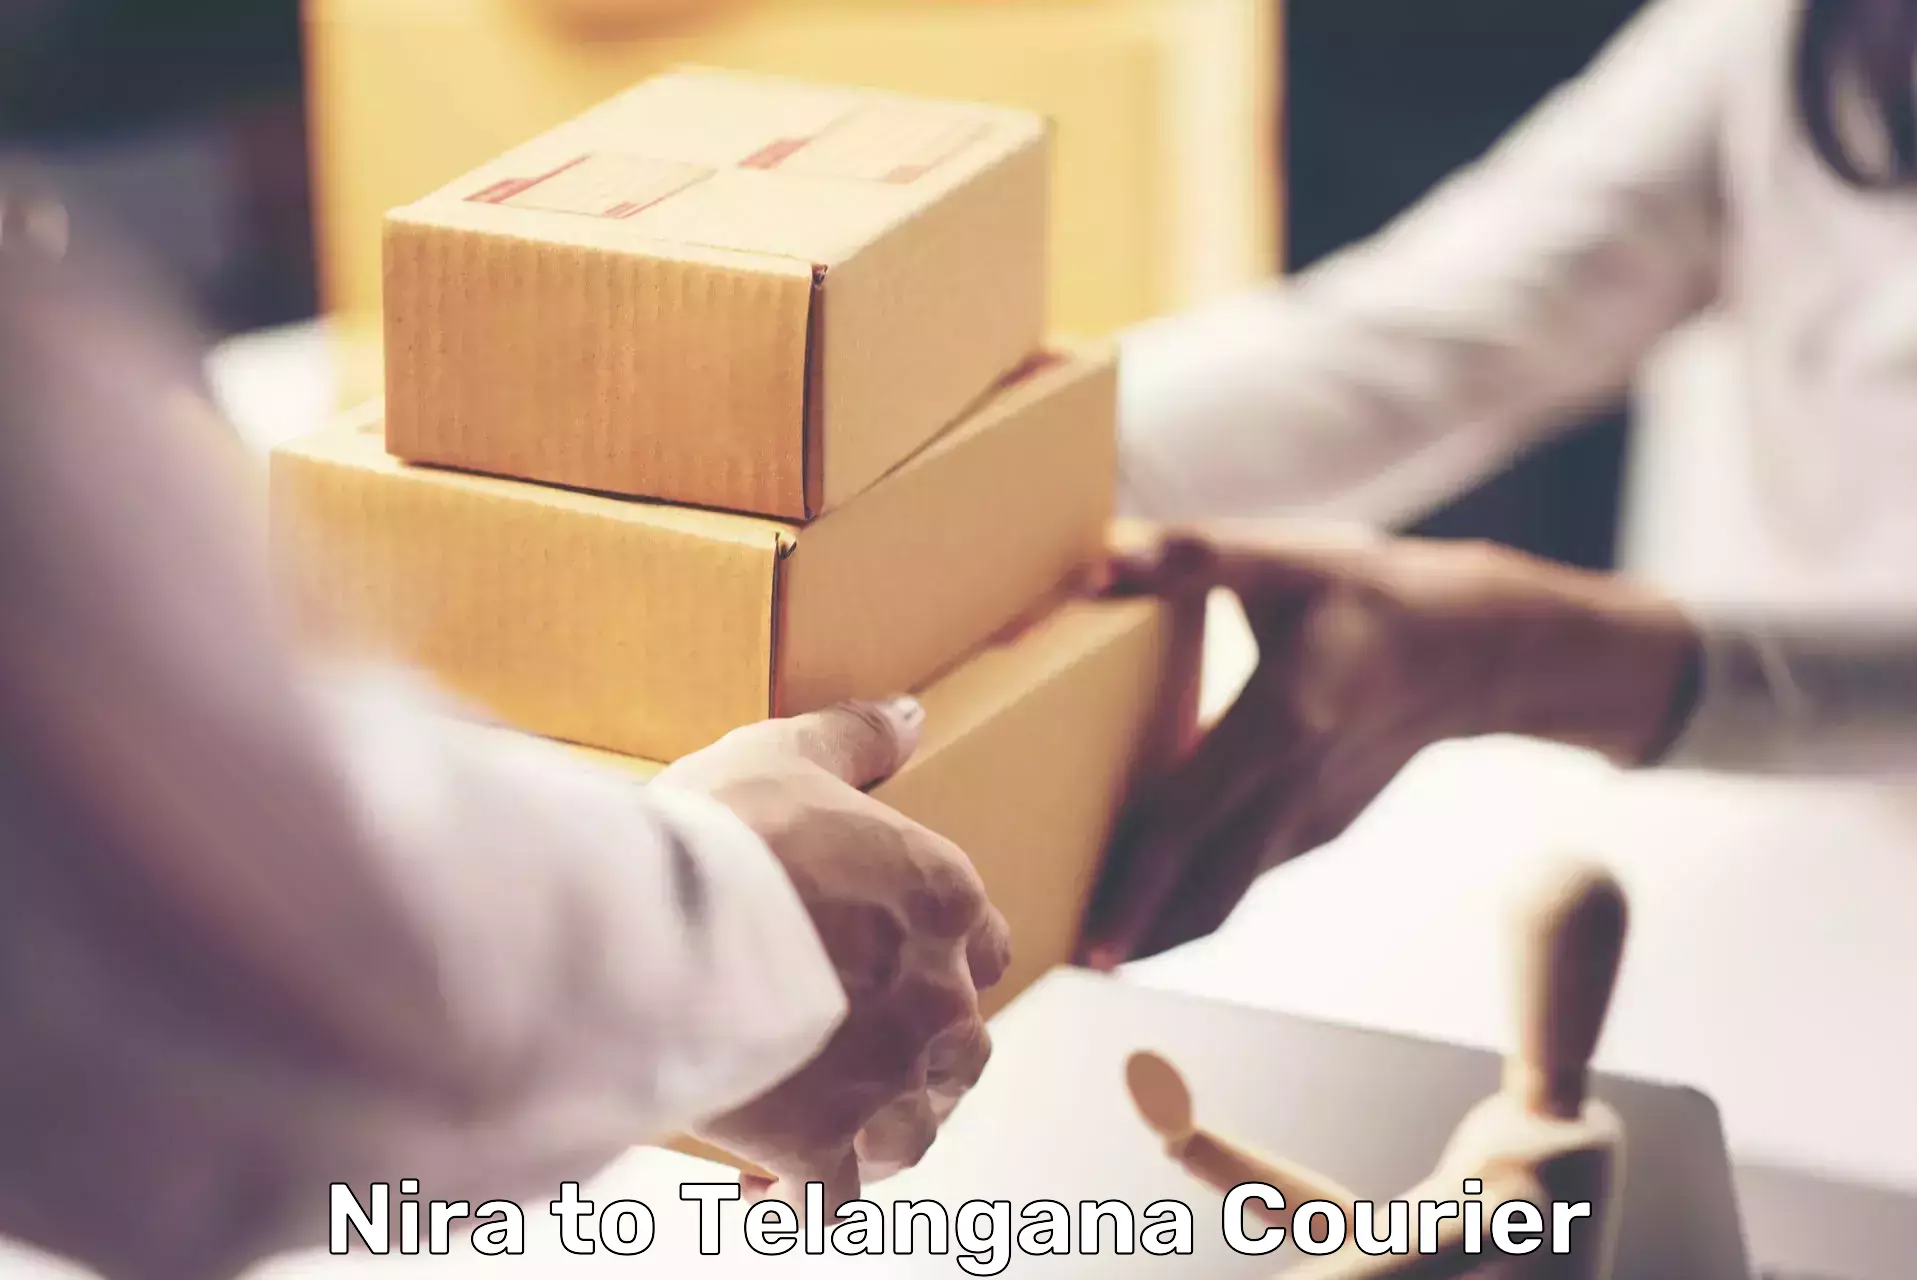 International parcel service Nira to Cheyyur